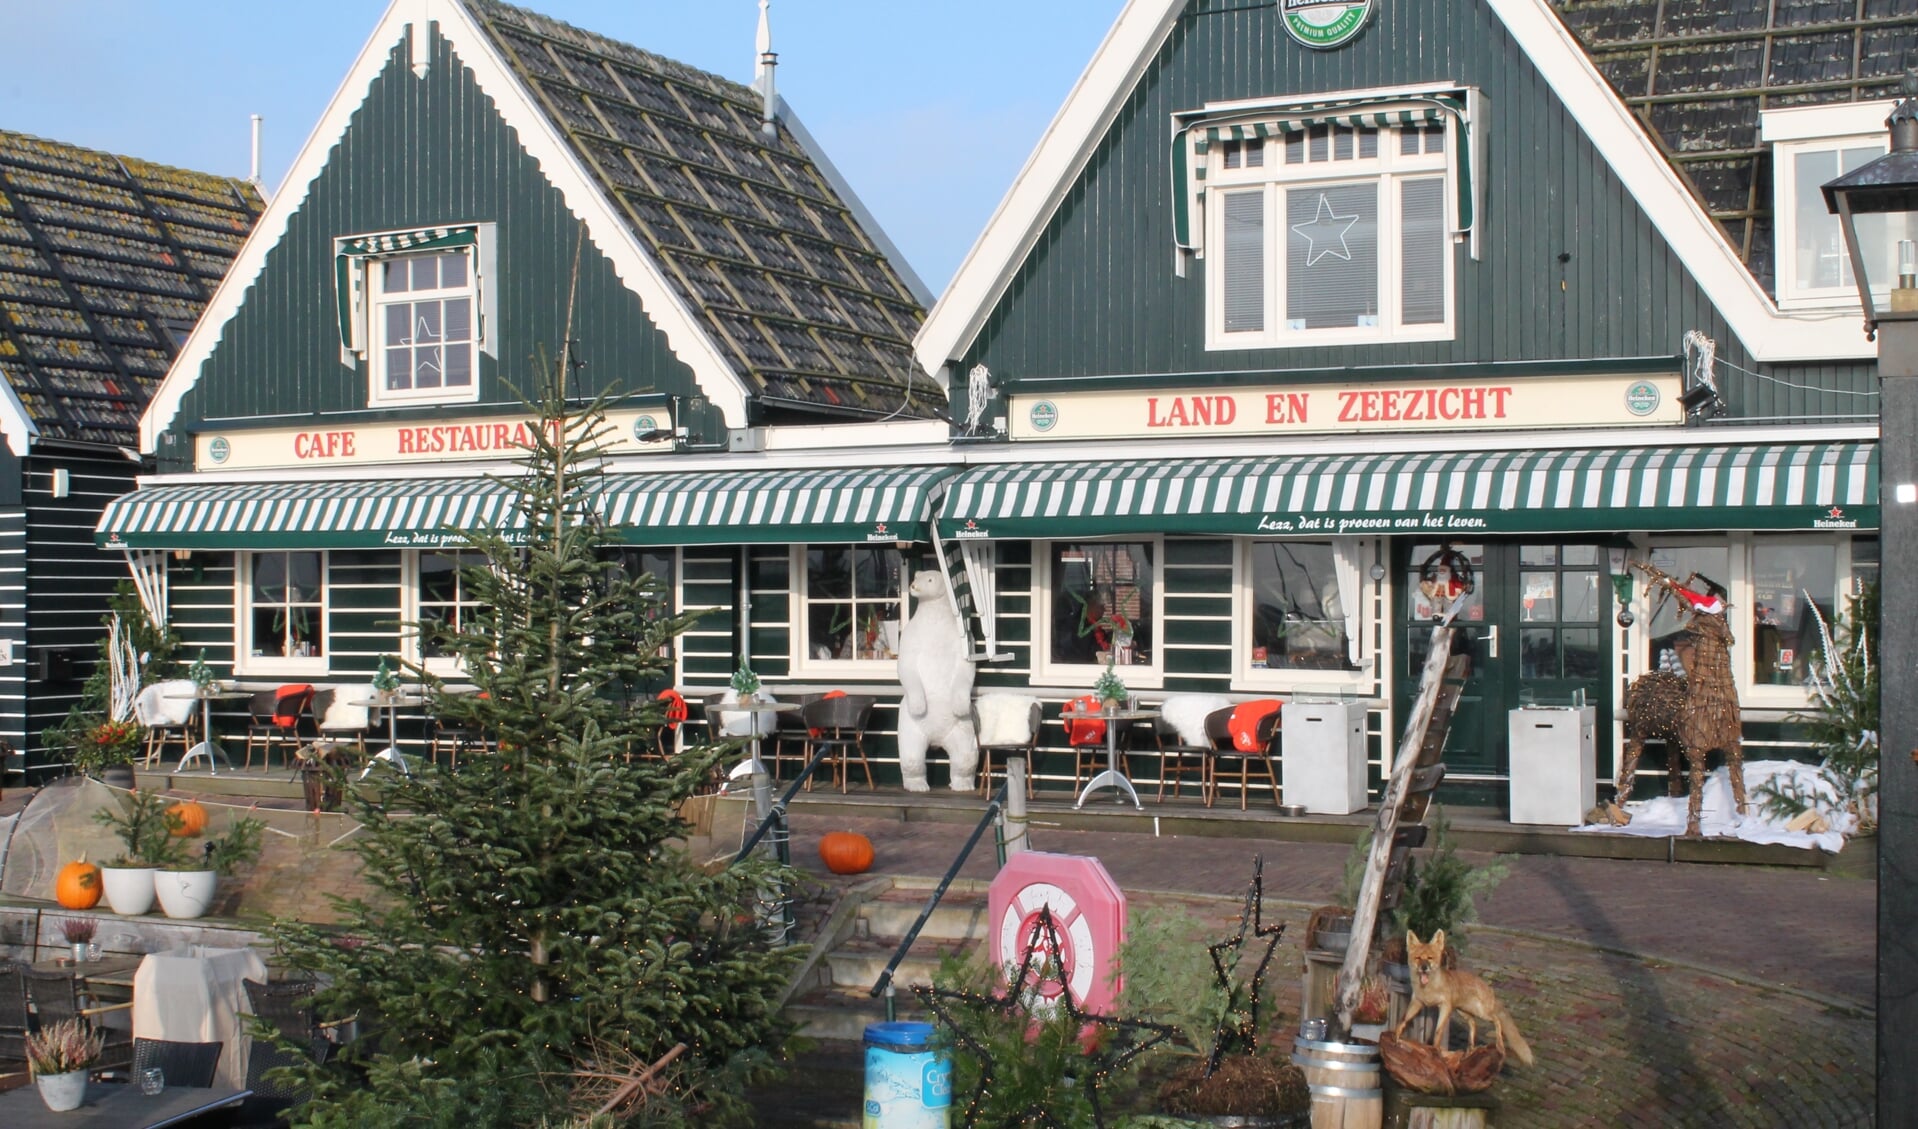 Restaurant Land- en Meerzicht in Marken.